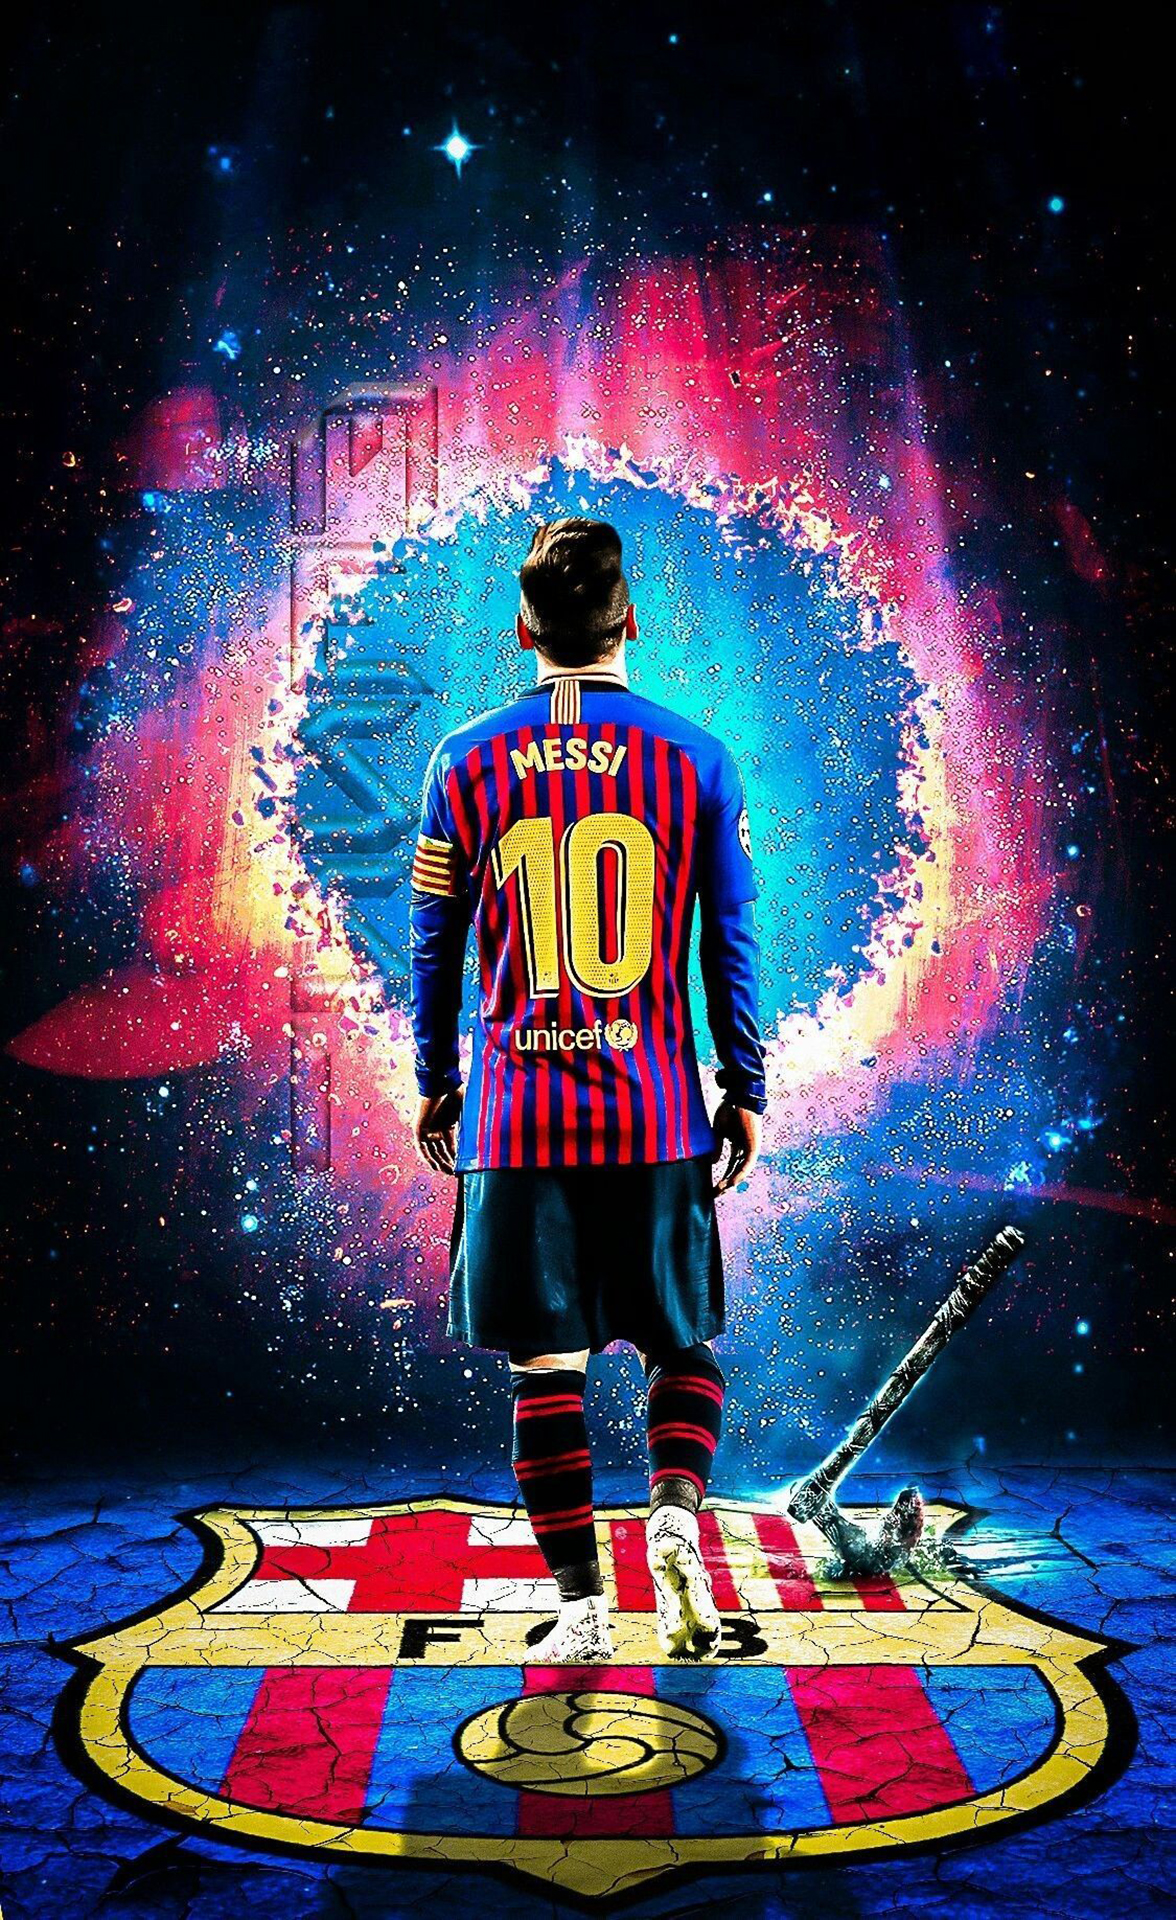 Hình Nền Messi: Nạp lại năng lượng và đam mê cho đam mê của bạn với hình nền bóng đá liên quan đến Lionel Messi. Sự chuyên nghiệp, cống hiến và kỹ năng tuyệt vời của anh ấy sẽ giúp bạn cảm thấy sẵn sàng đối mặt với mọi thách thức trong cuộc sống. Hãy cùng xem bức ảnh liên quan đến Messi để tìm thấy niềm đam mê và năng lượng của bạn.